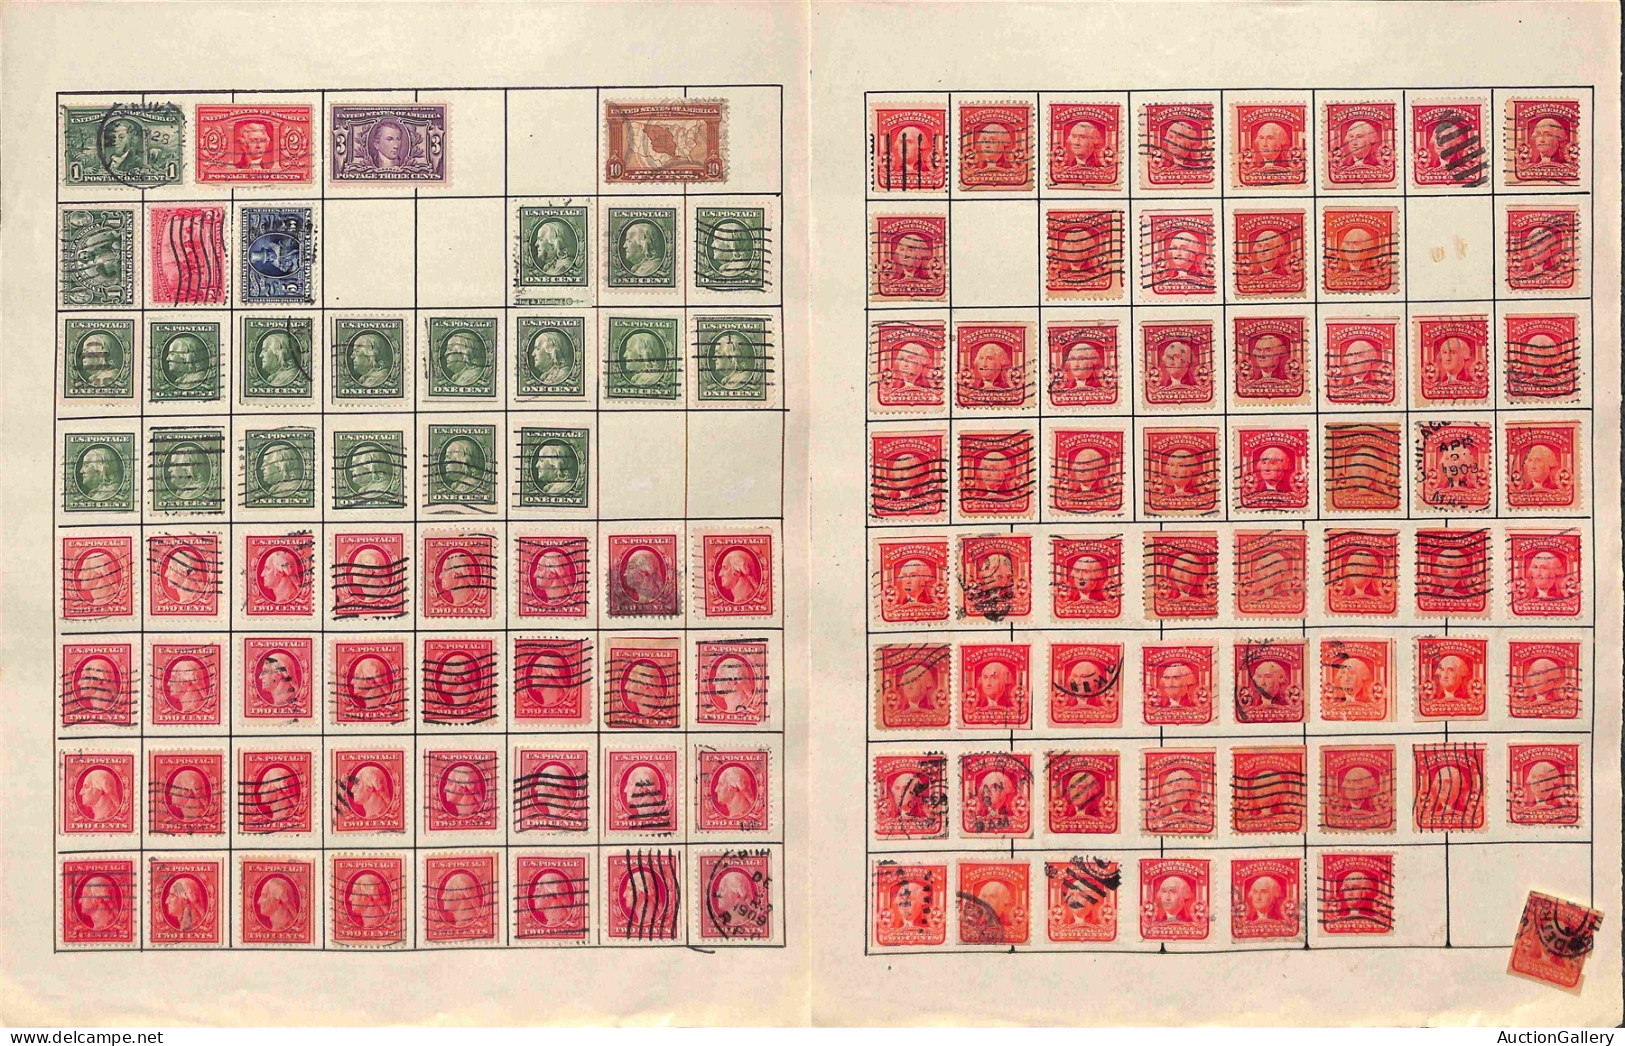 Lotti&Collezioni - STATI UNITI D'AMERICA - 1851/1935 - Collezione di valori usati del periodo con ripetizioni montati su